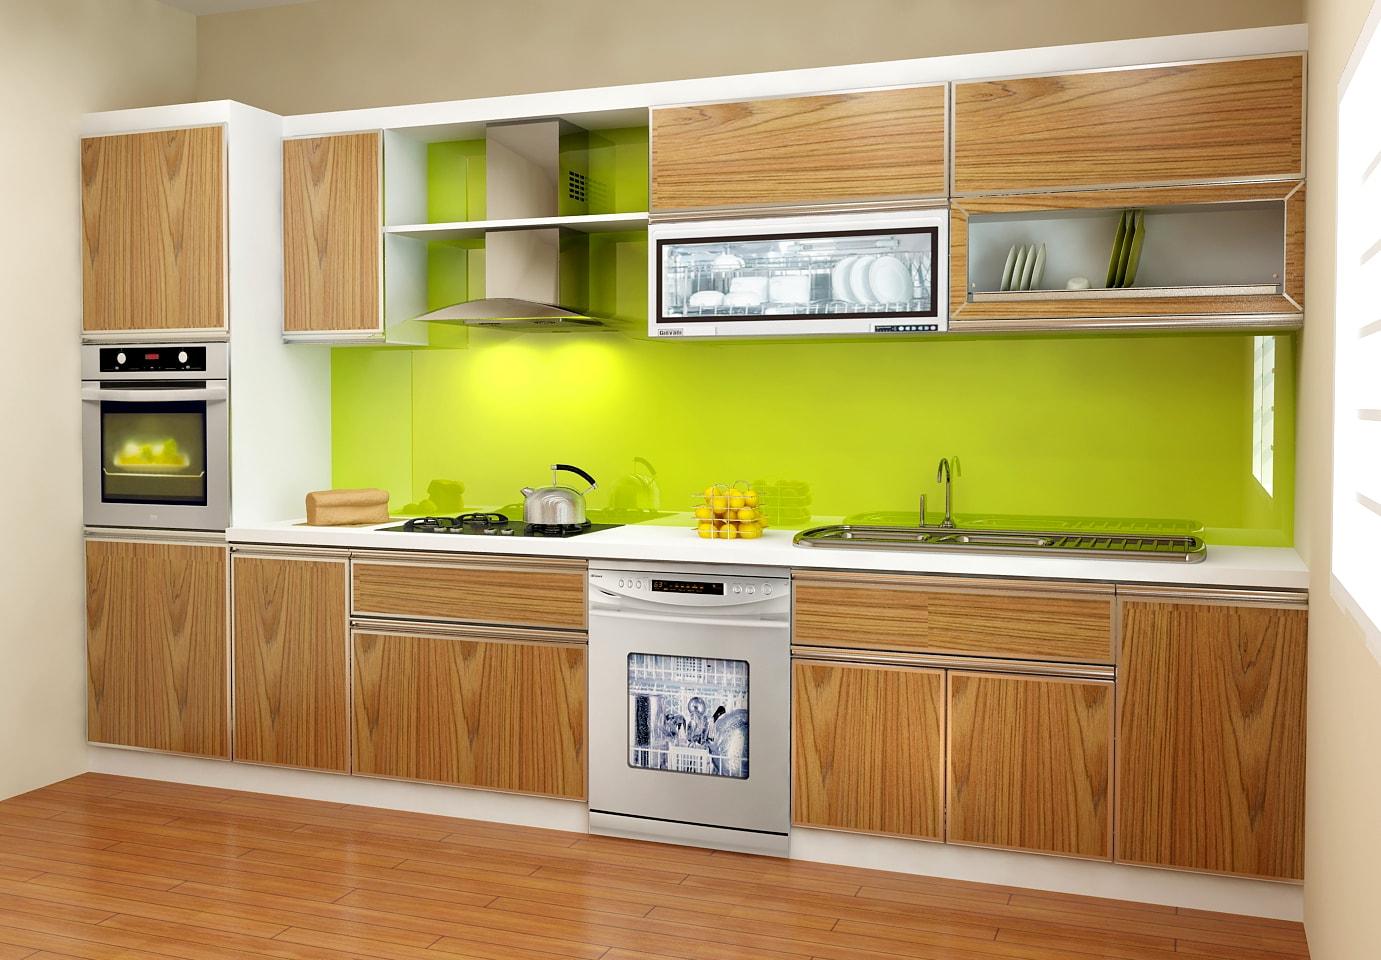 Các loại gỗ công nghiệp và lớp phủ bề mặt gỗ công nghiệp trong nội thất nhà bếp